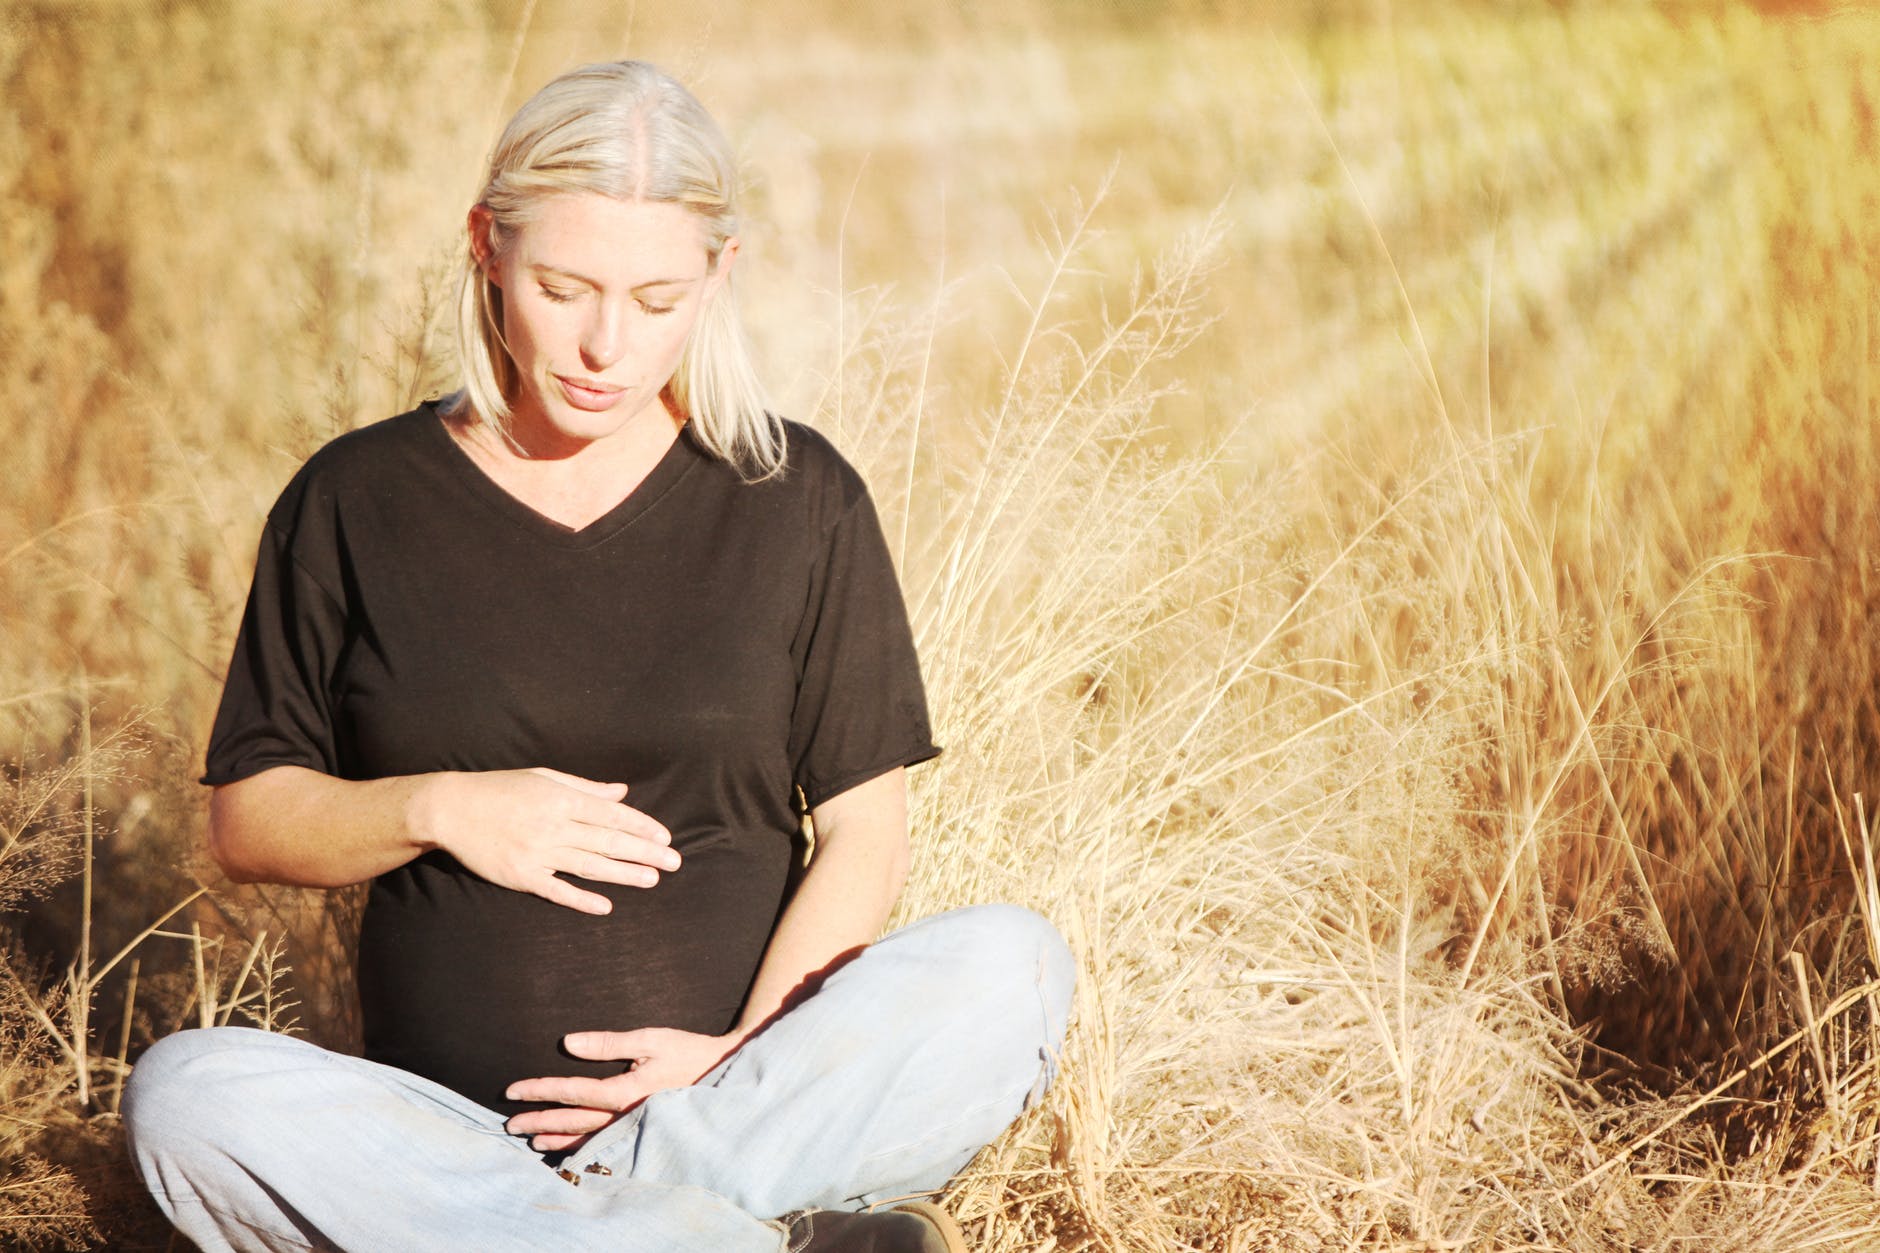 Τι είναι ασφαλές (και τι όχι) στην εγκυμοσύνη!